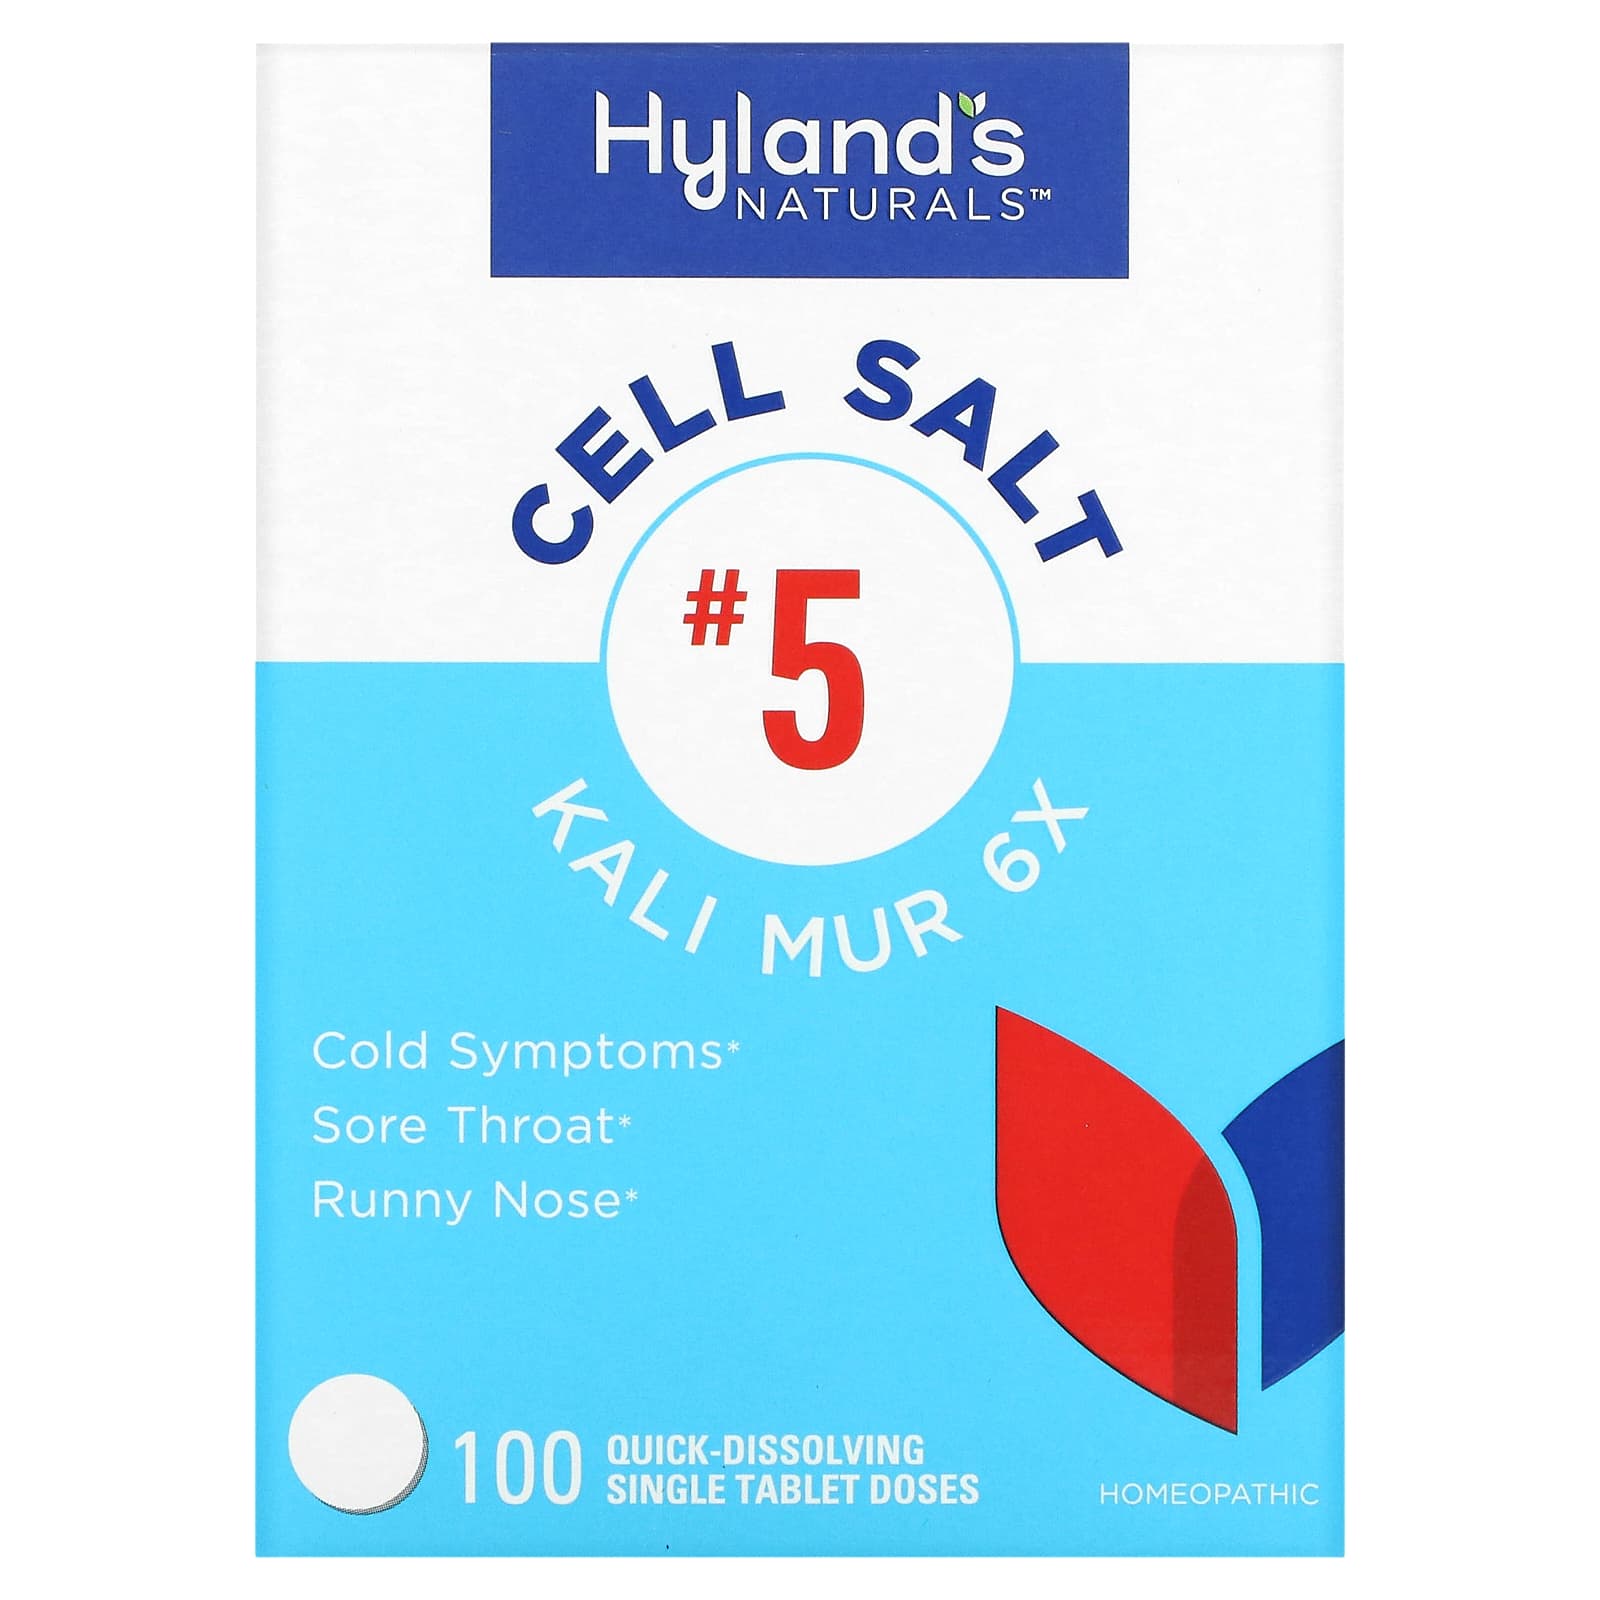 Клеточная Соль №5 / Калла Горькая 6X Hyland's, 100 быстрорастворимых таблеток hyland s клеточная соль 2 калькарея фосфорика calc phos 6x 100 отдельных быстрорастворимых таблеток